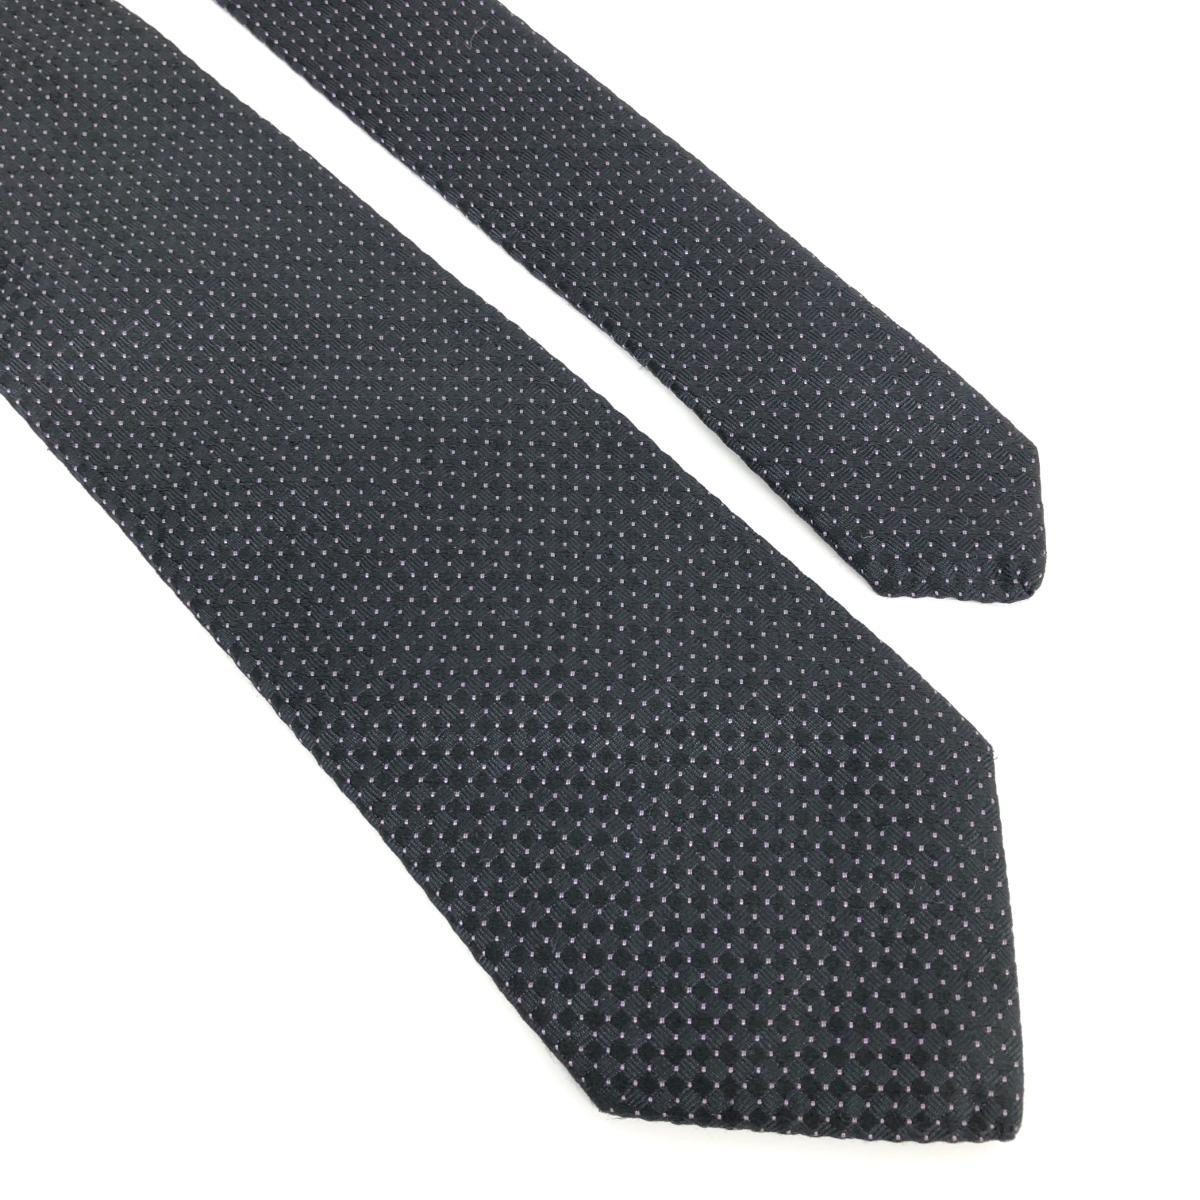  хороший *PRADA Prada галстук * черный шелк 100% точка мужской шелк формальный костюм джентльмен аксессуары 